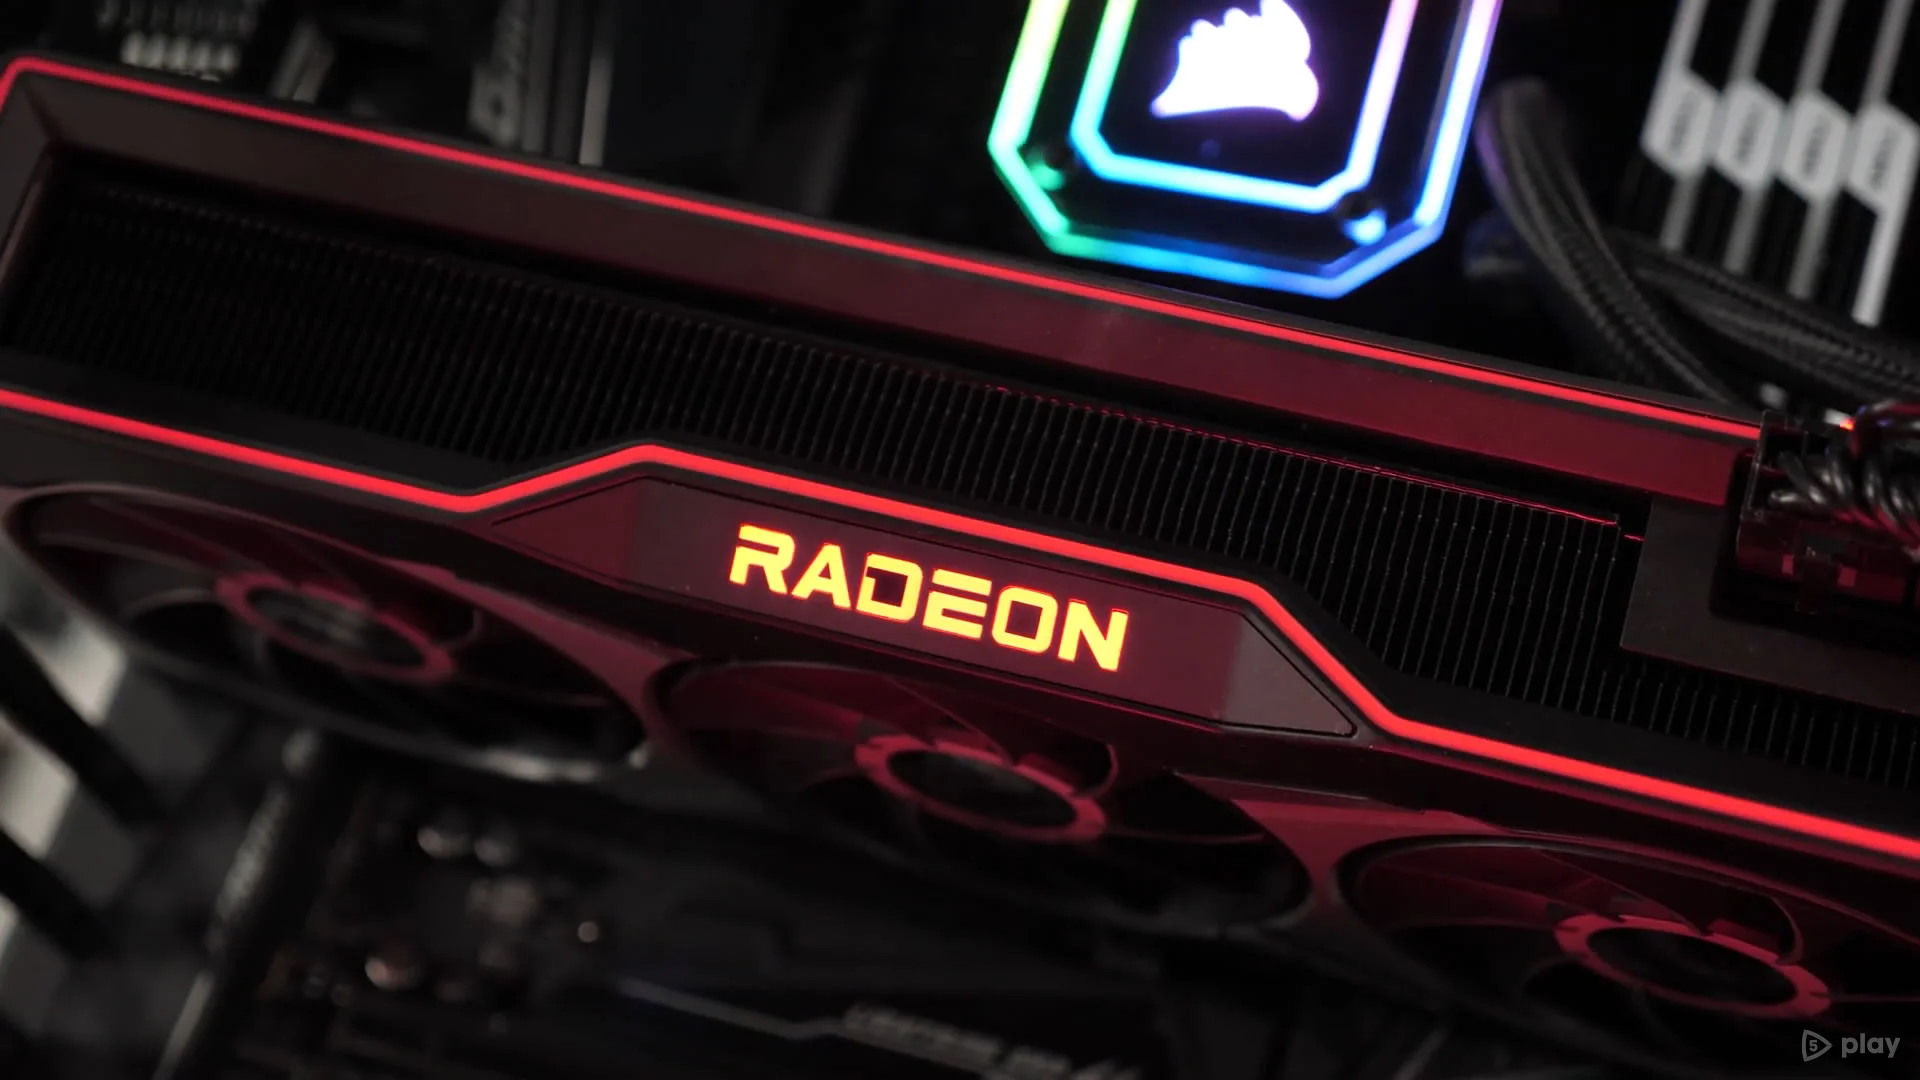 Видеокарта Radeon RX 6900 XT обновила рекорд производительности